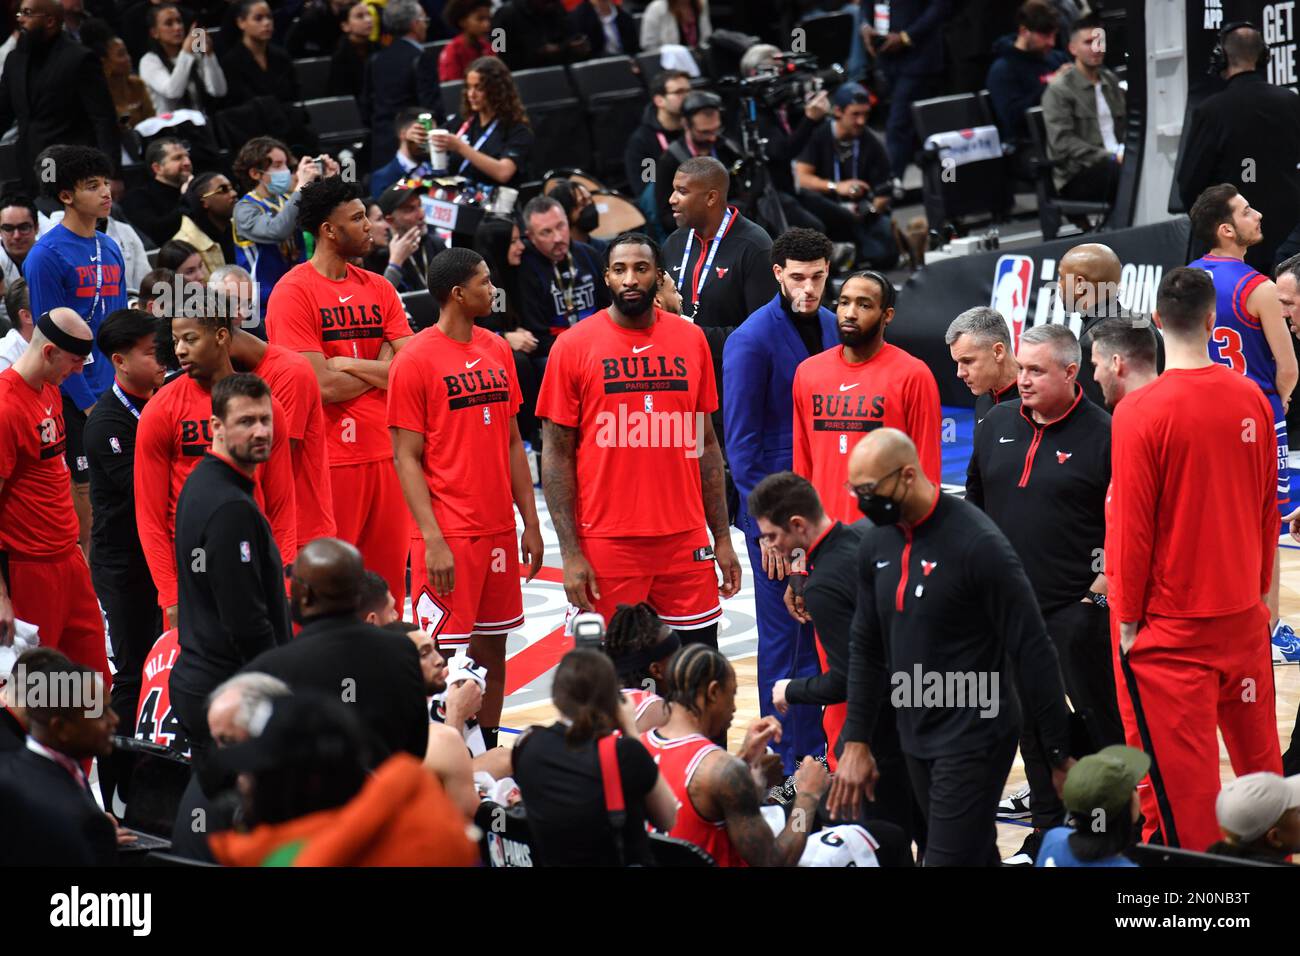 NBA Paris Game 2023 zwischen Detroit Pistons und Chicago Bulls in der AccorHotels Arena am 19. Januar 2023 in Paris, Frankreich Stockfoto